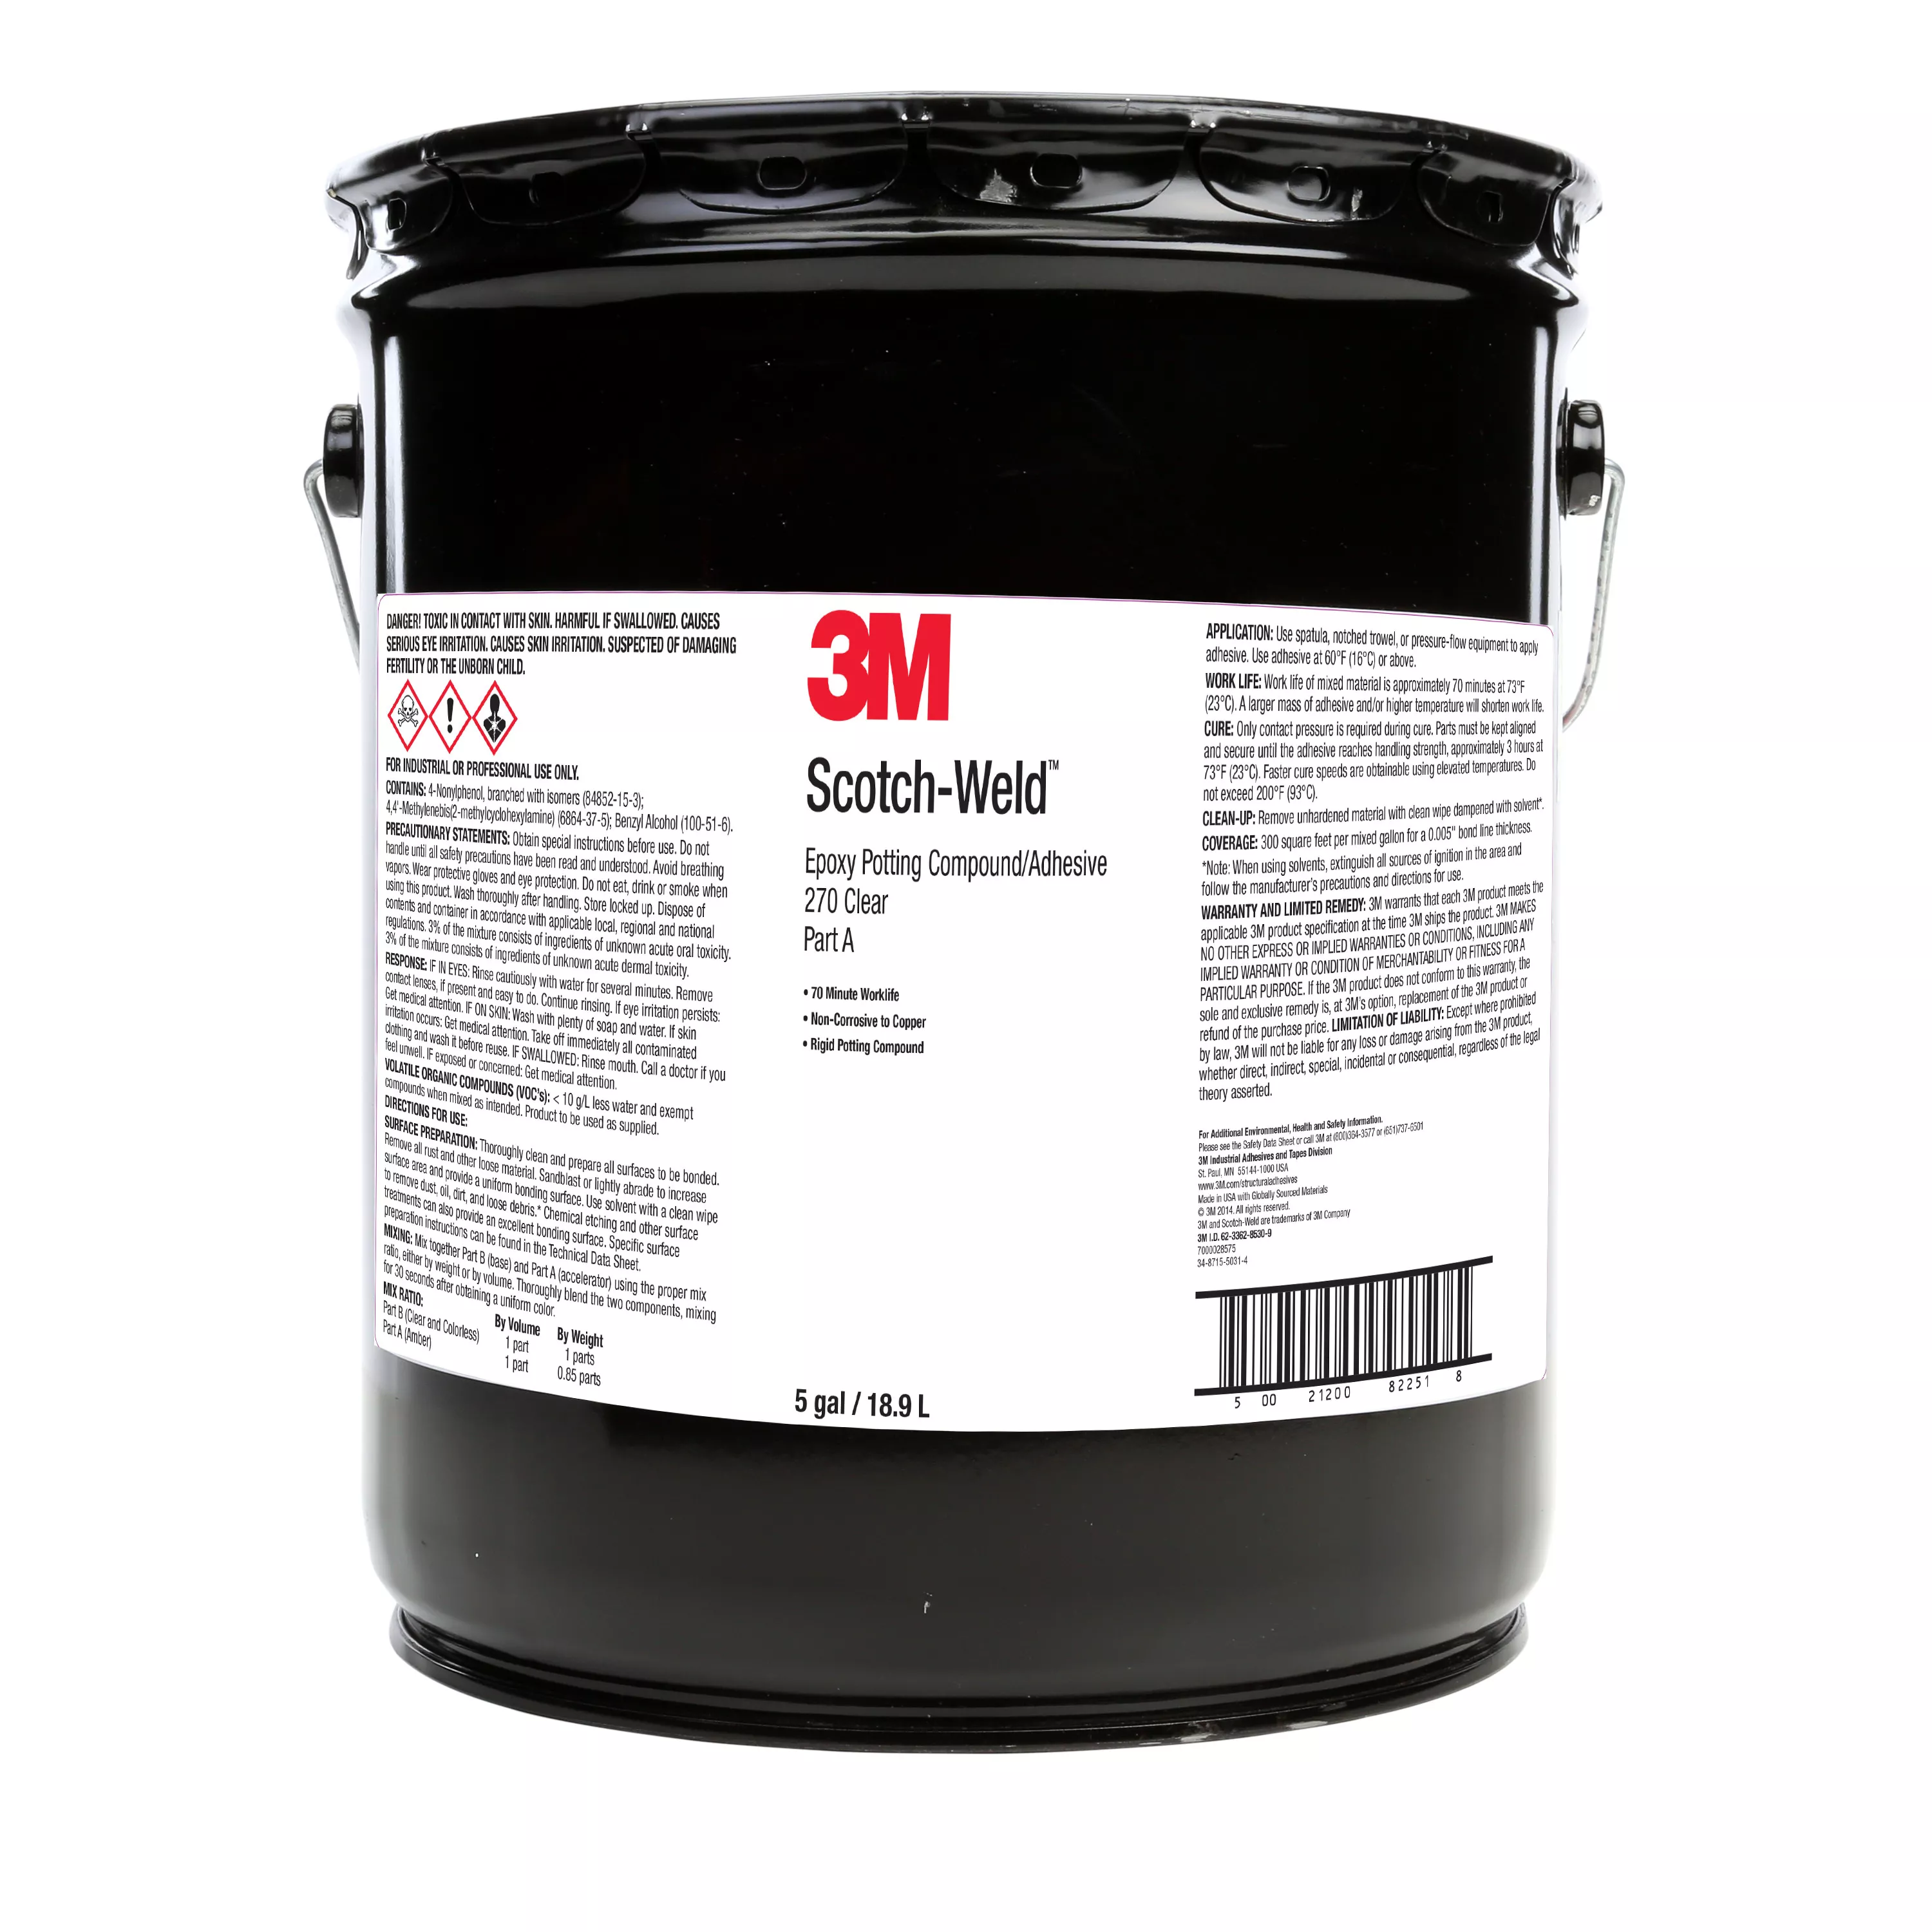 3M™ Scotch-Weld™ Epoxy Potting Compound 270, Clear, Part A, 5 Gallon
(Pail), 1 Can/Drum